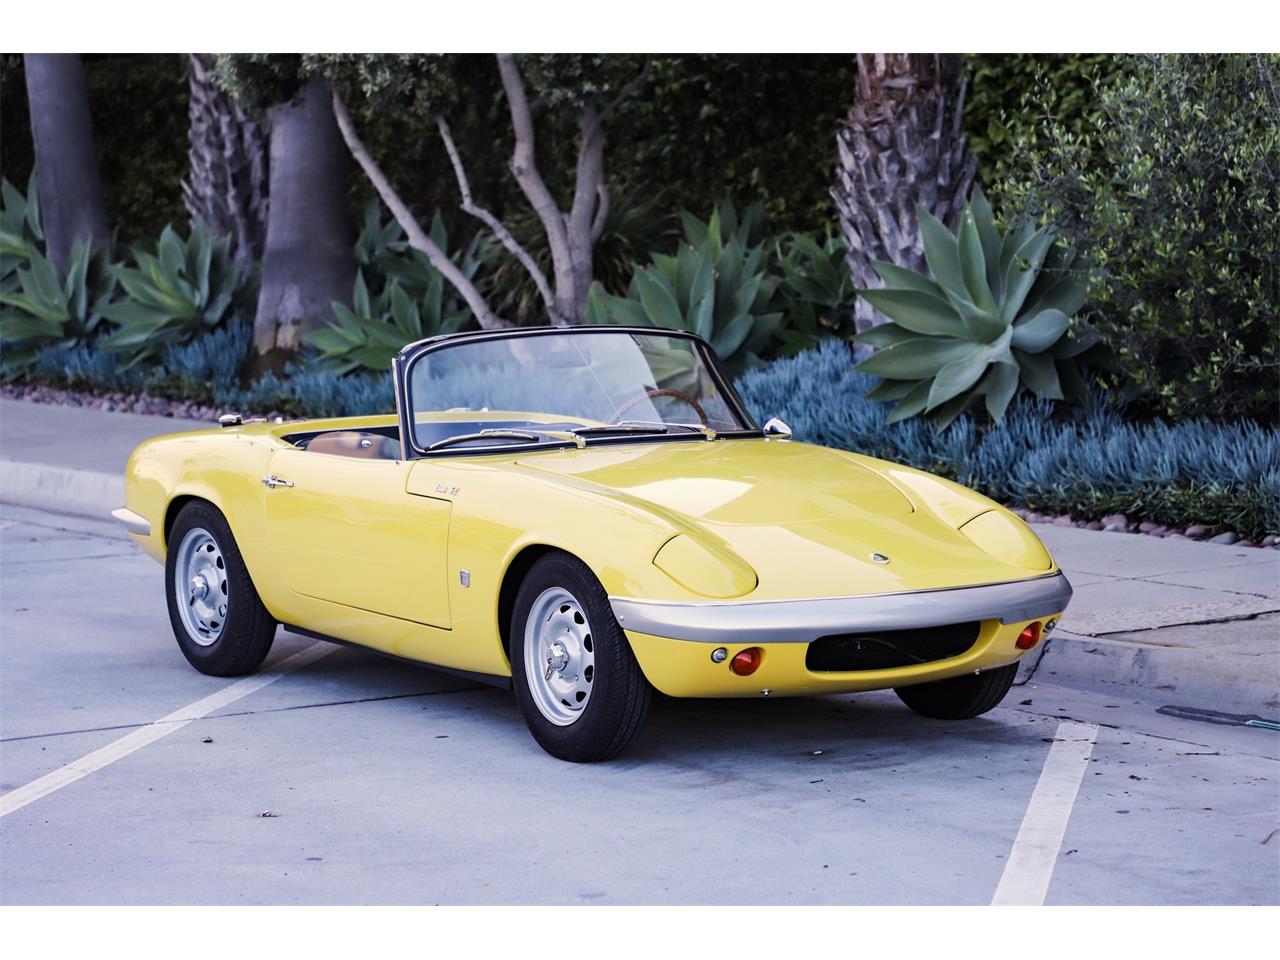 1965 Lotus Elan in La Jolla, California